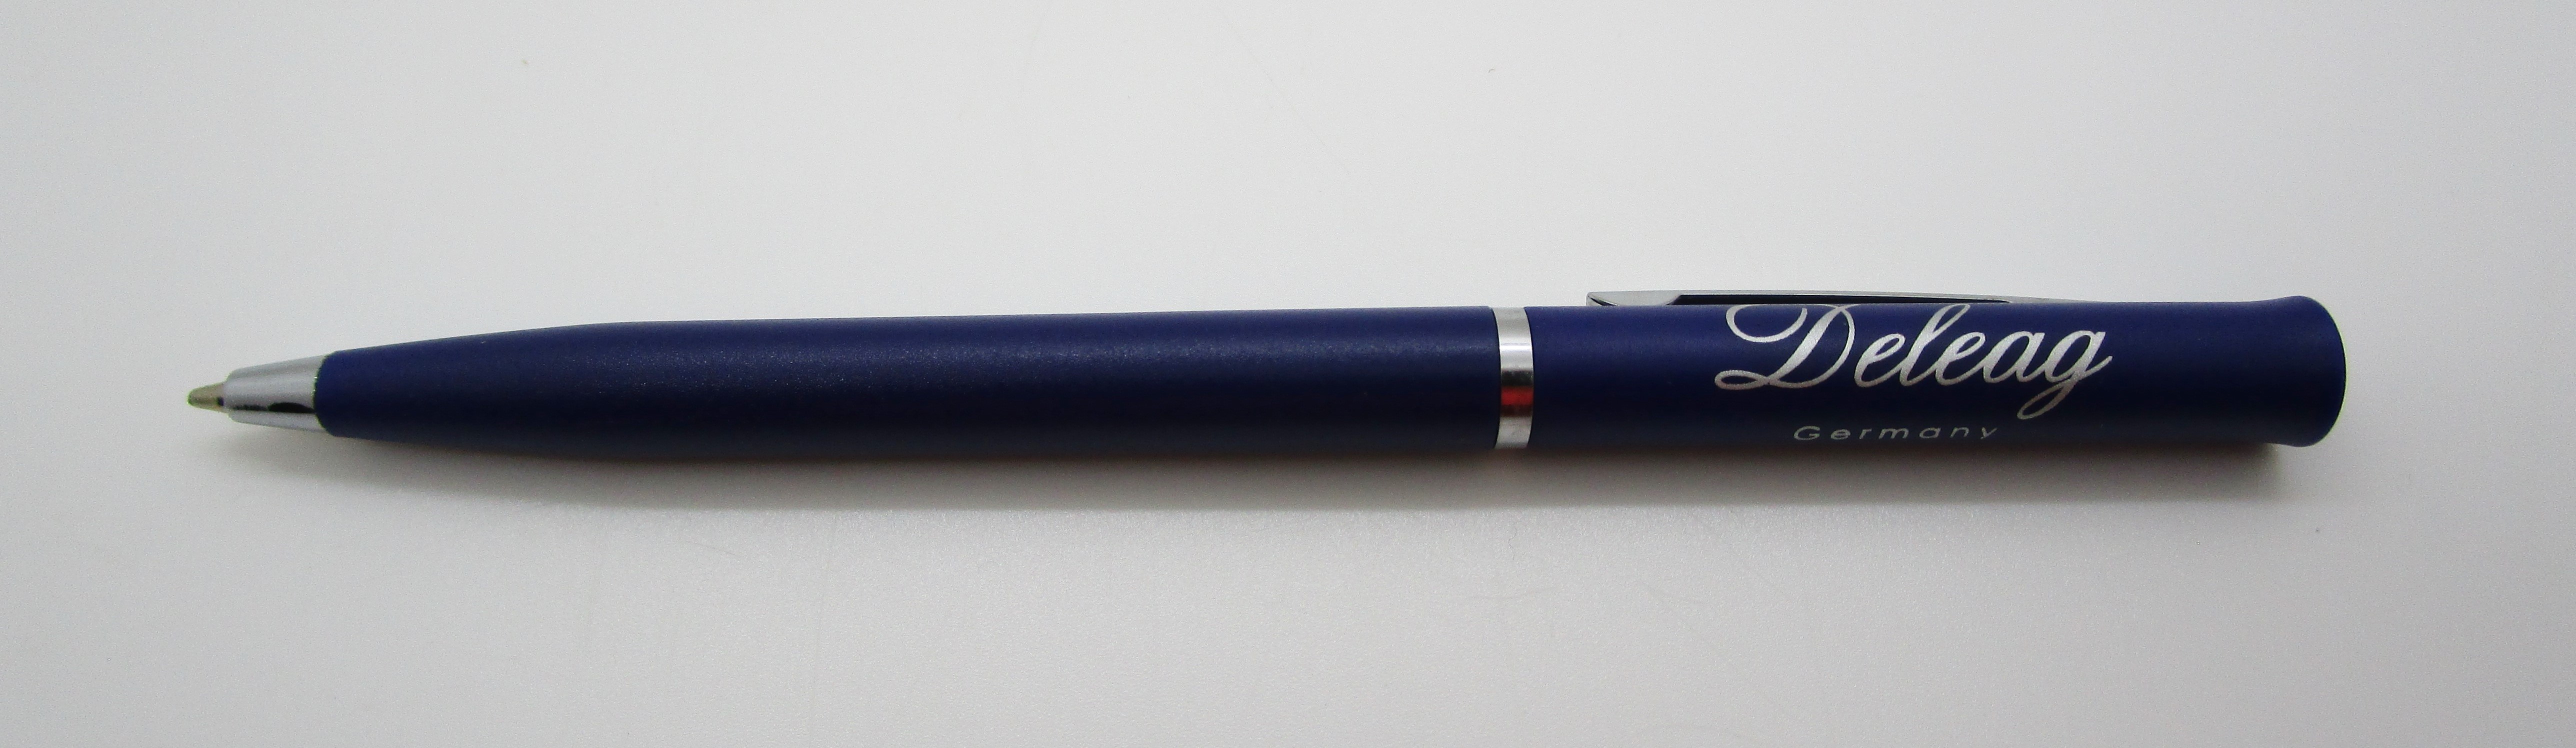 Kunststoffkugelschreiber blau silber